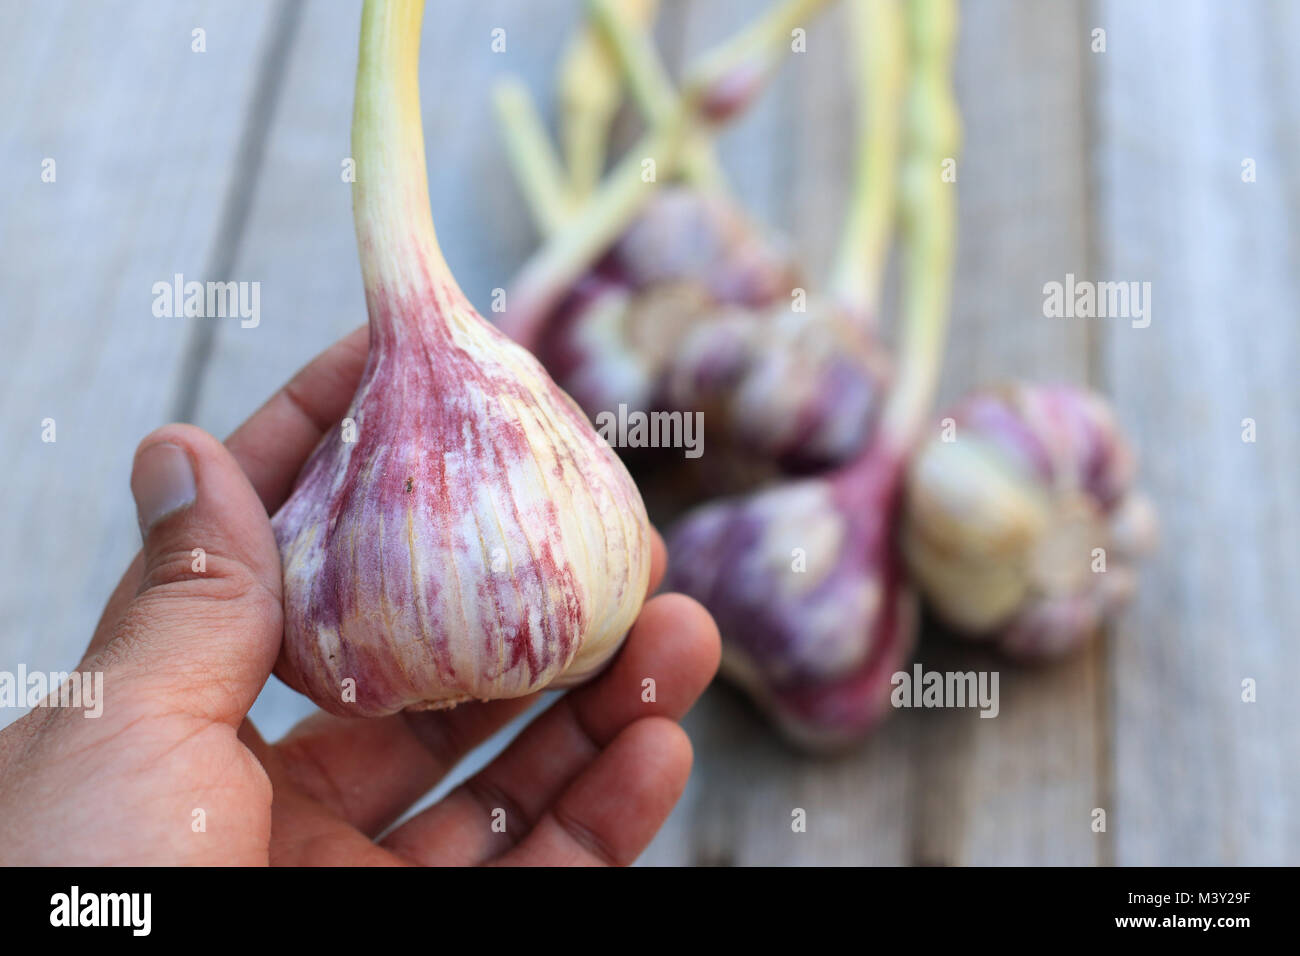 Appena raccolto Allium sativum o noto come bulbi di aglio su sfondo di legno Foto Stock